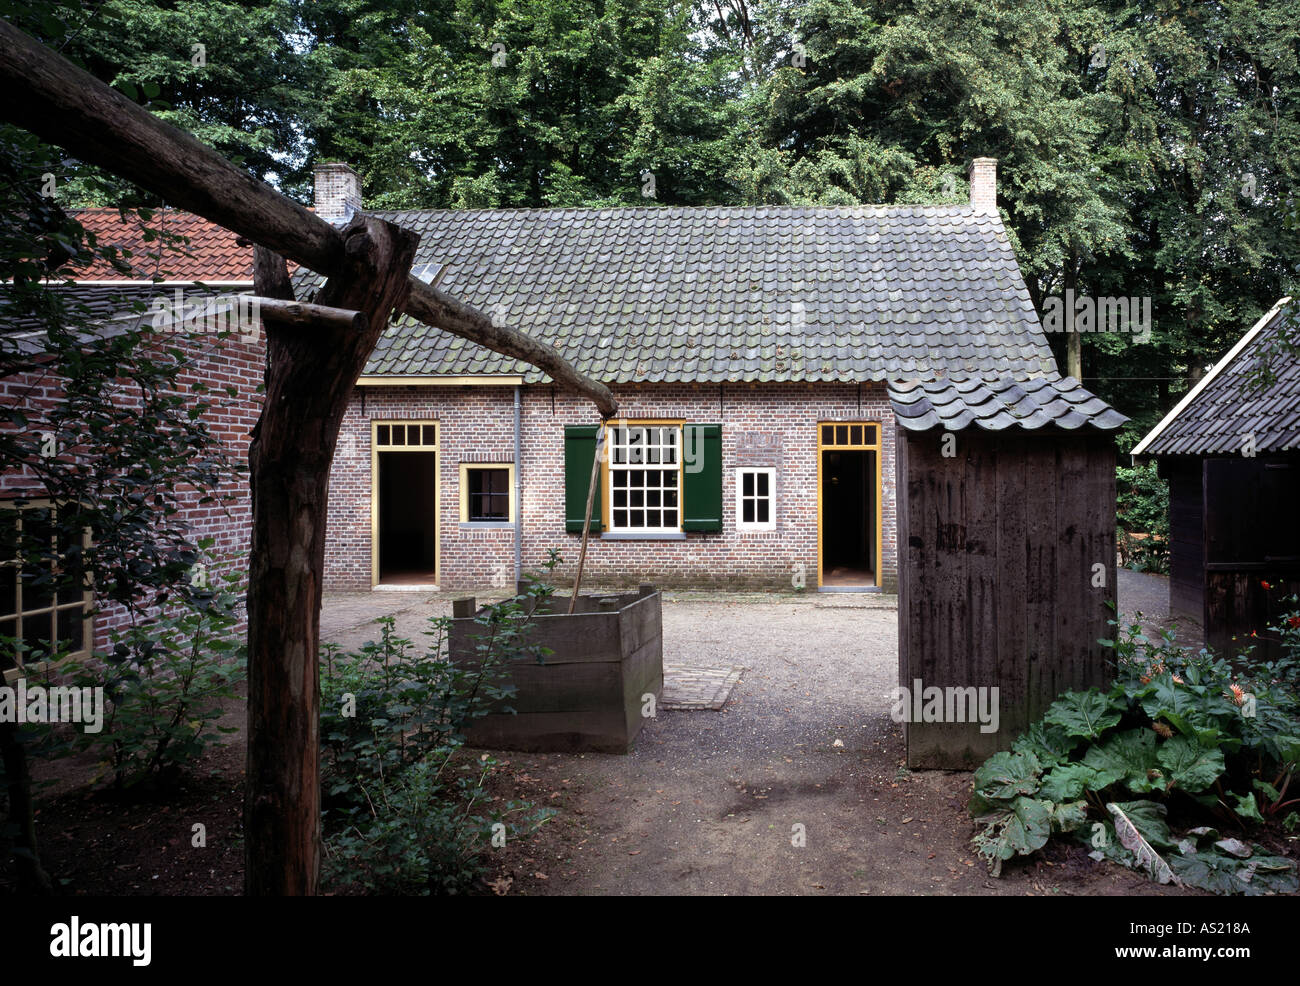 Arnhem, Openluchtmuseum, Arbeiterhaus aus Tilburg von 1860, Hofseite mit Brunnen und Abort Foto Stock